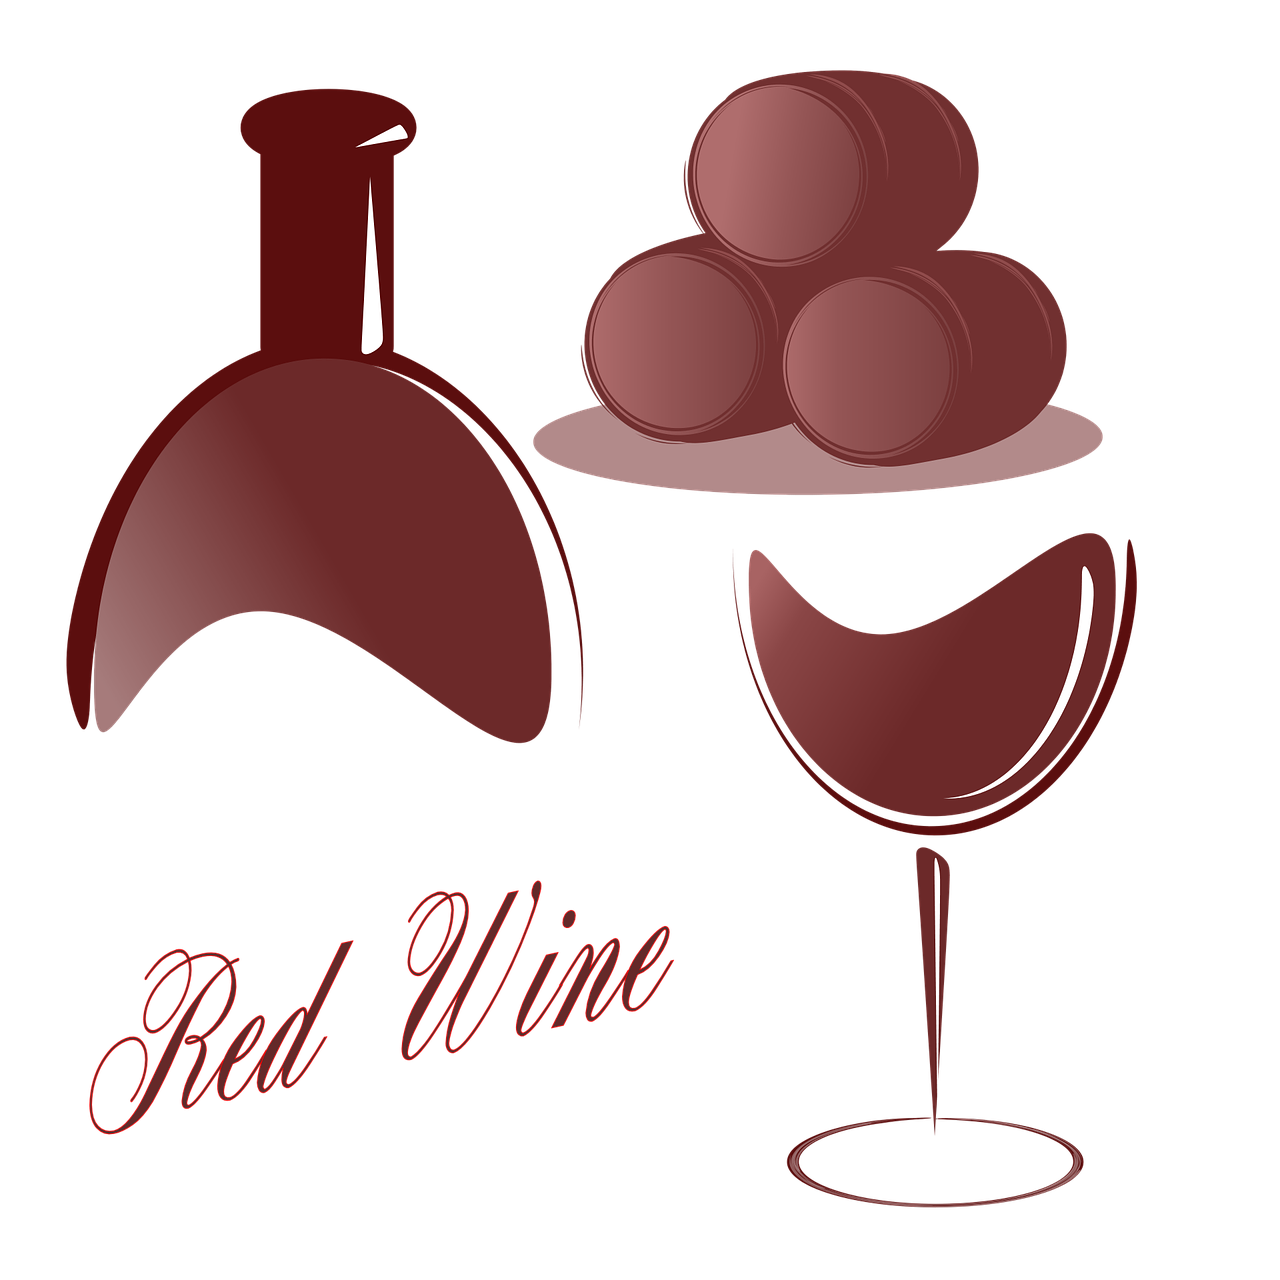 red wine winery wine free photo